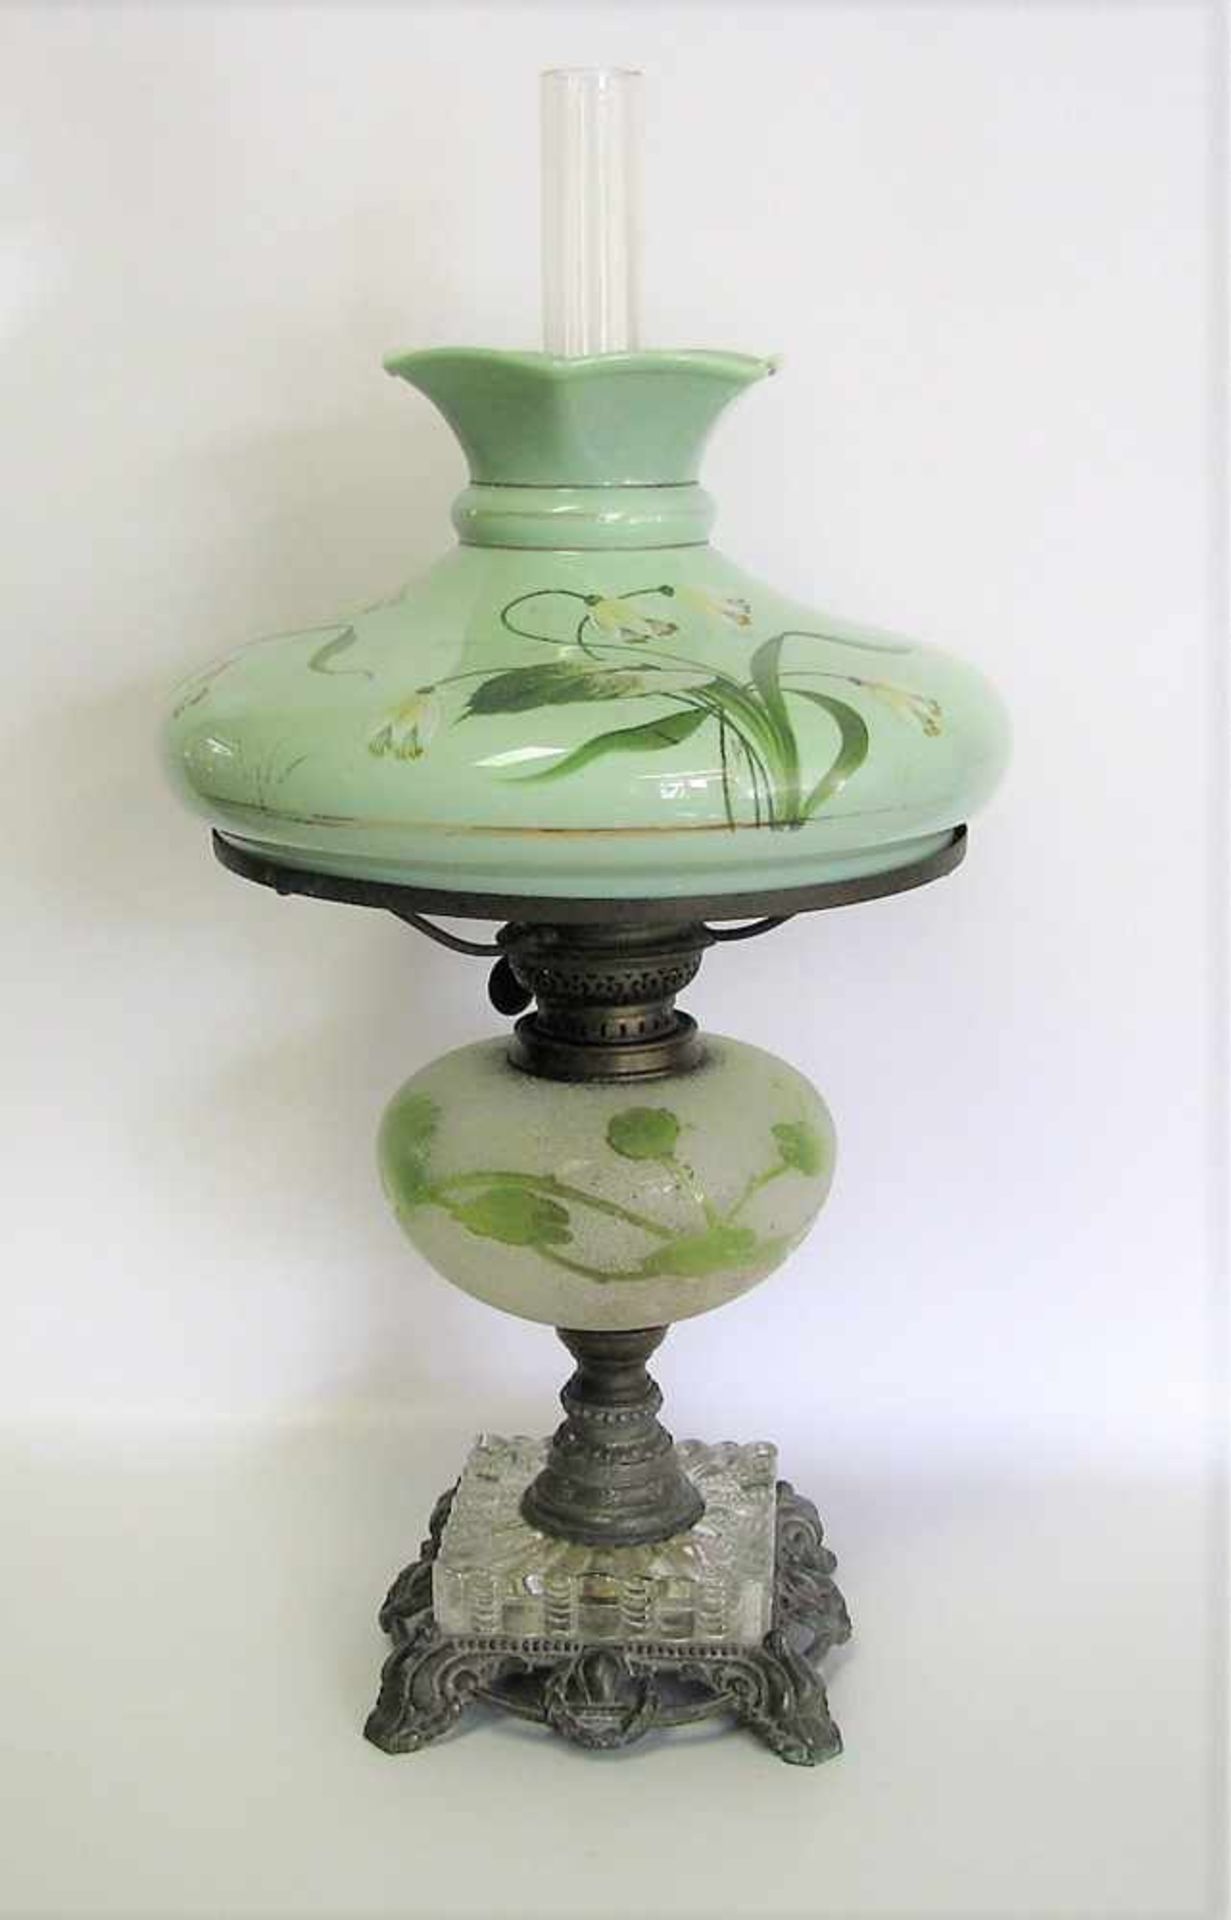 Petroleum-Tischlampe, Jugendstil, um 1900, grünlicher Opalinglasschirm, handbemalt, kl. Chip am